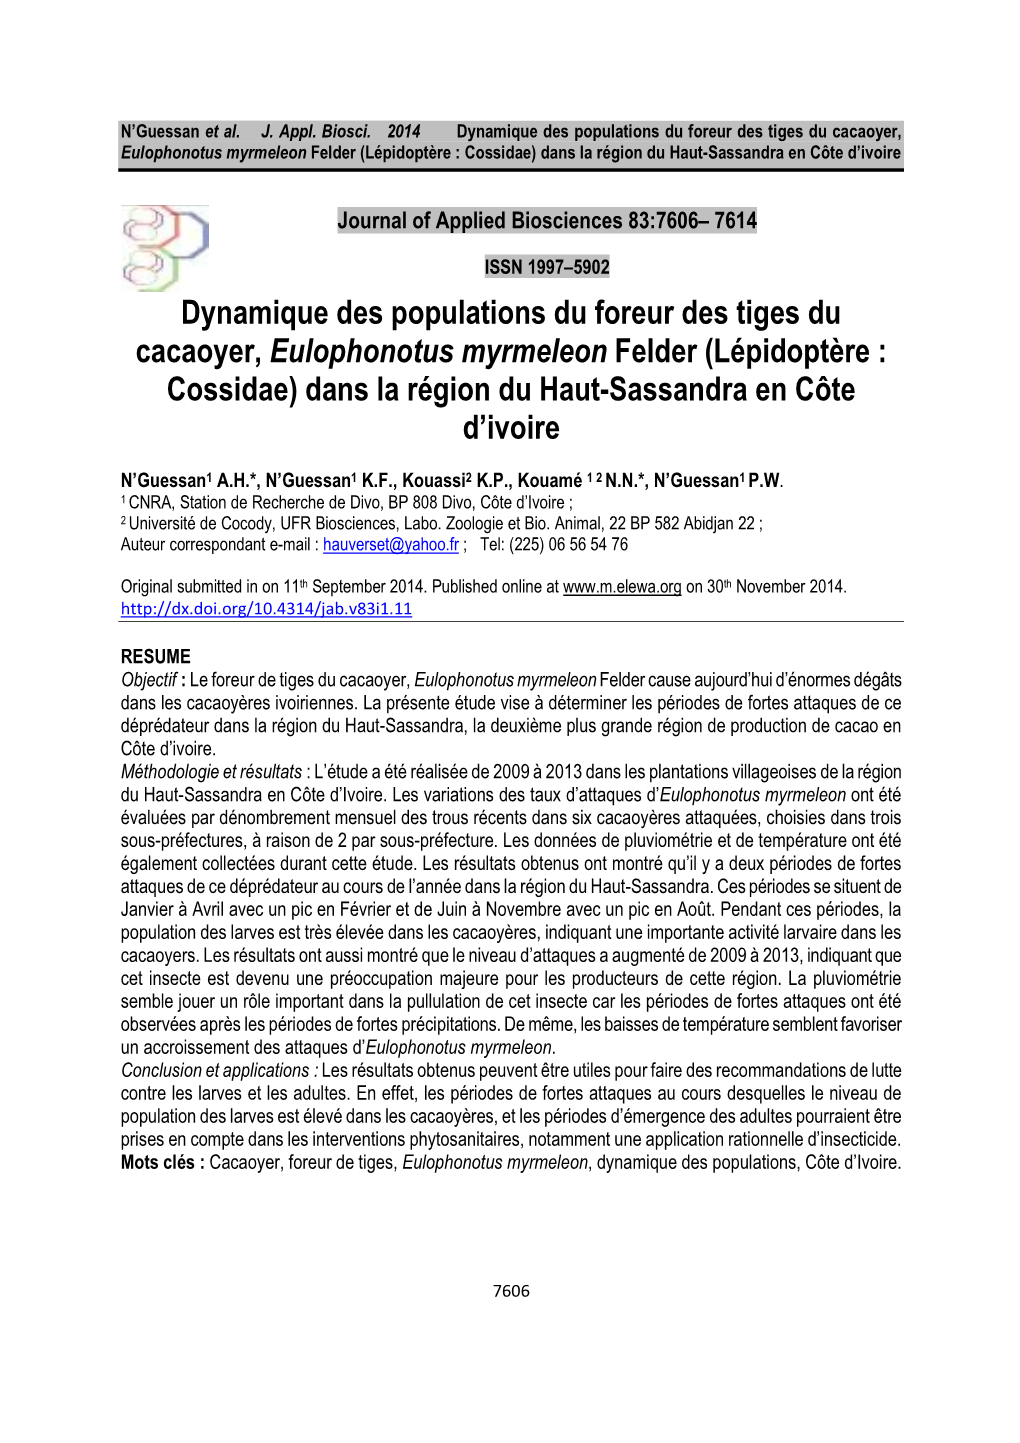 Dynamique Des Populations Du Foreur Des Tiges Du Cacaoyer, Eulophonotus Myrmeleon Felder (Lépidoptère : Cossidae) Dans La Région Du Haut-Sassandra En Côte D’Ivoire